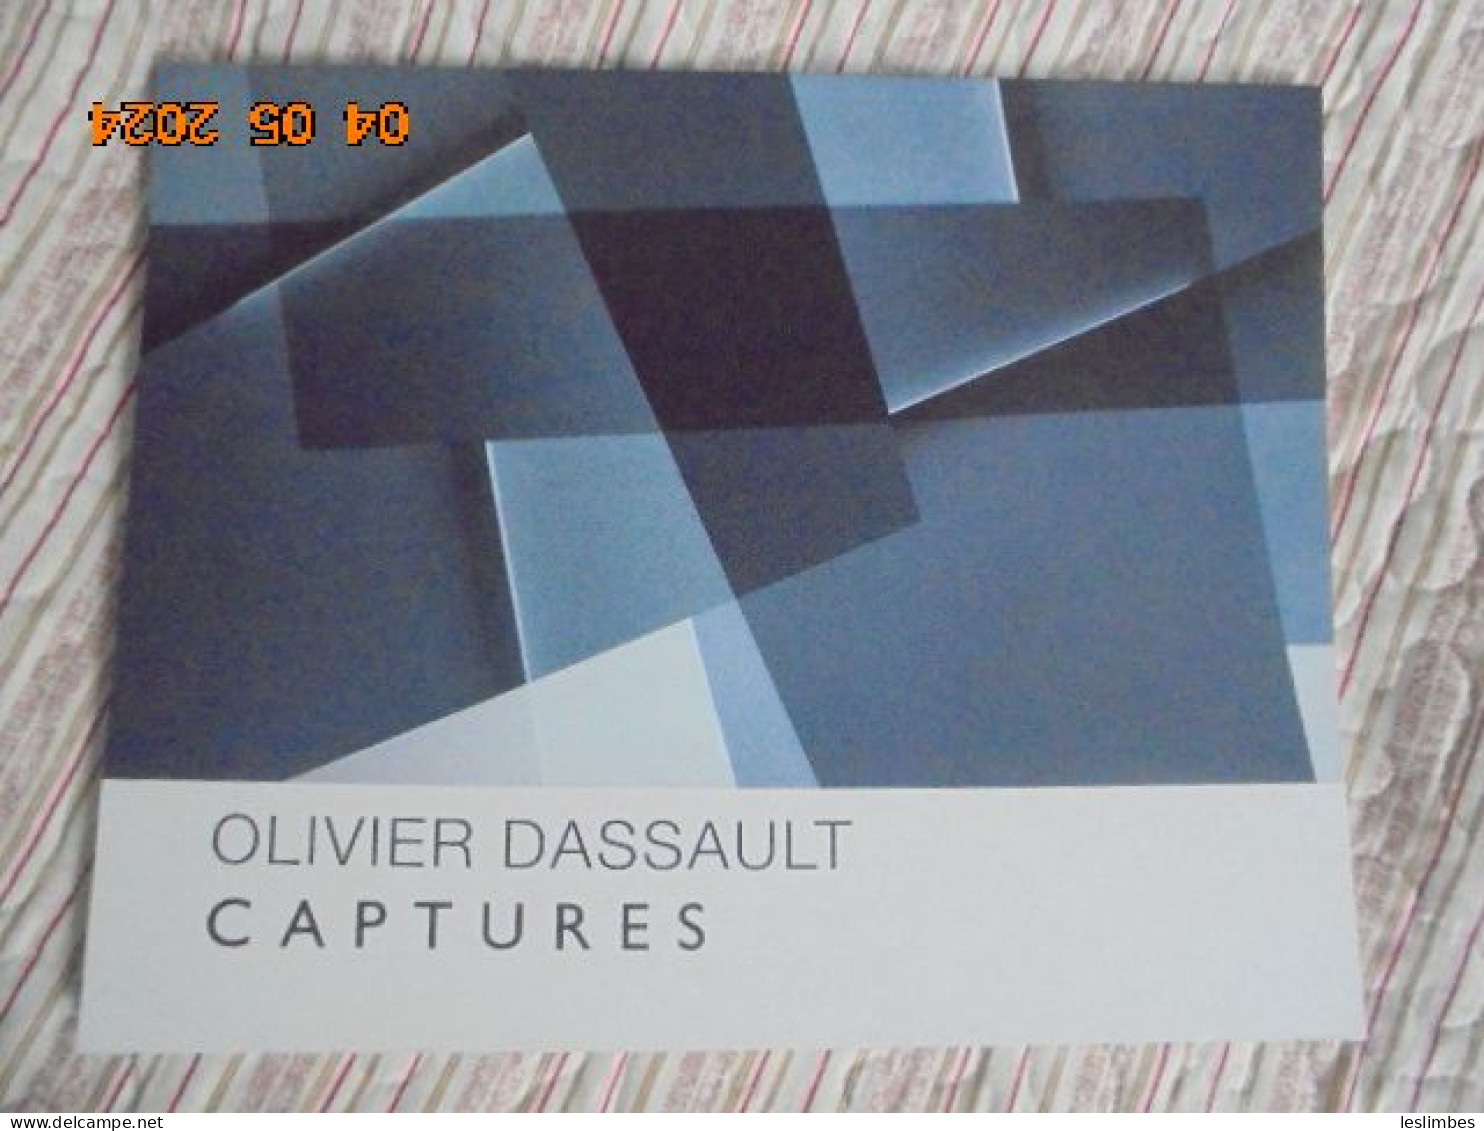 Olivier Dassault : Captures - Guy Pieters Gallery 2014 - Arte